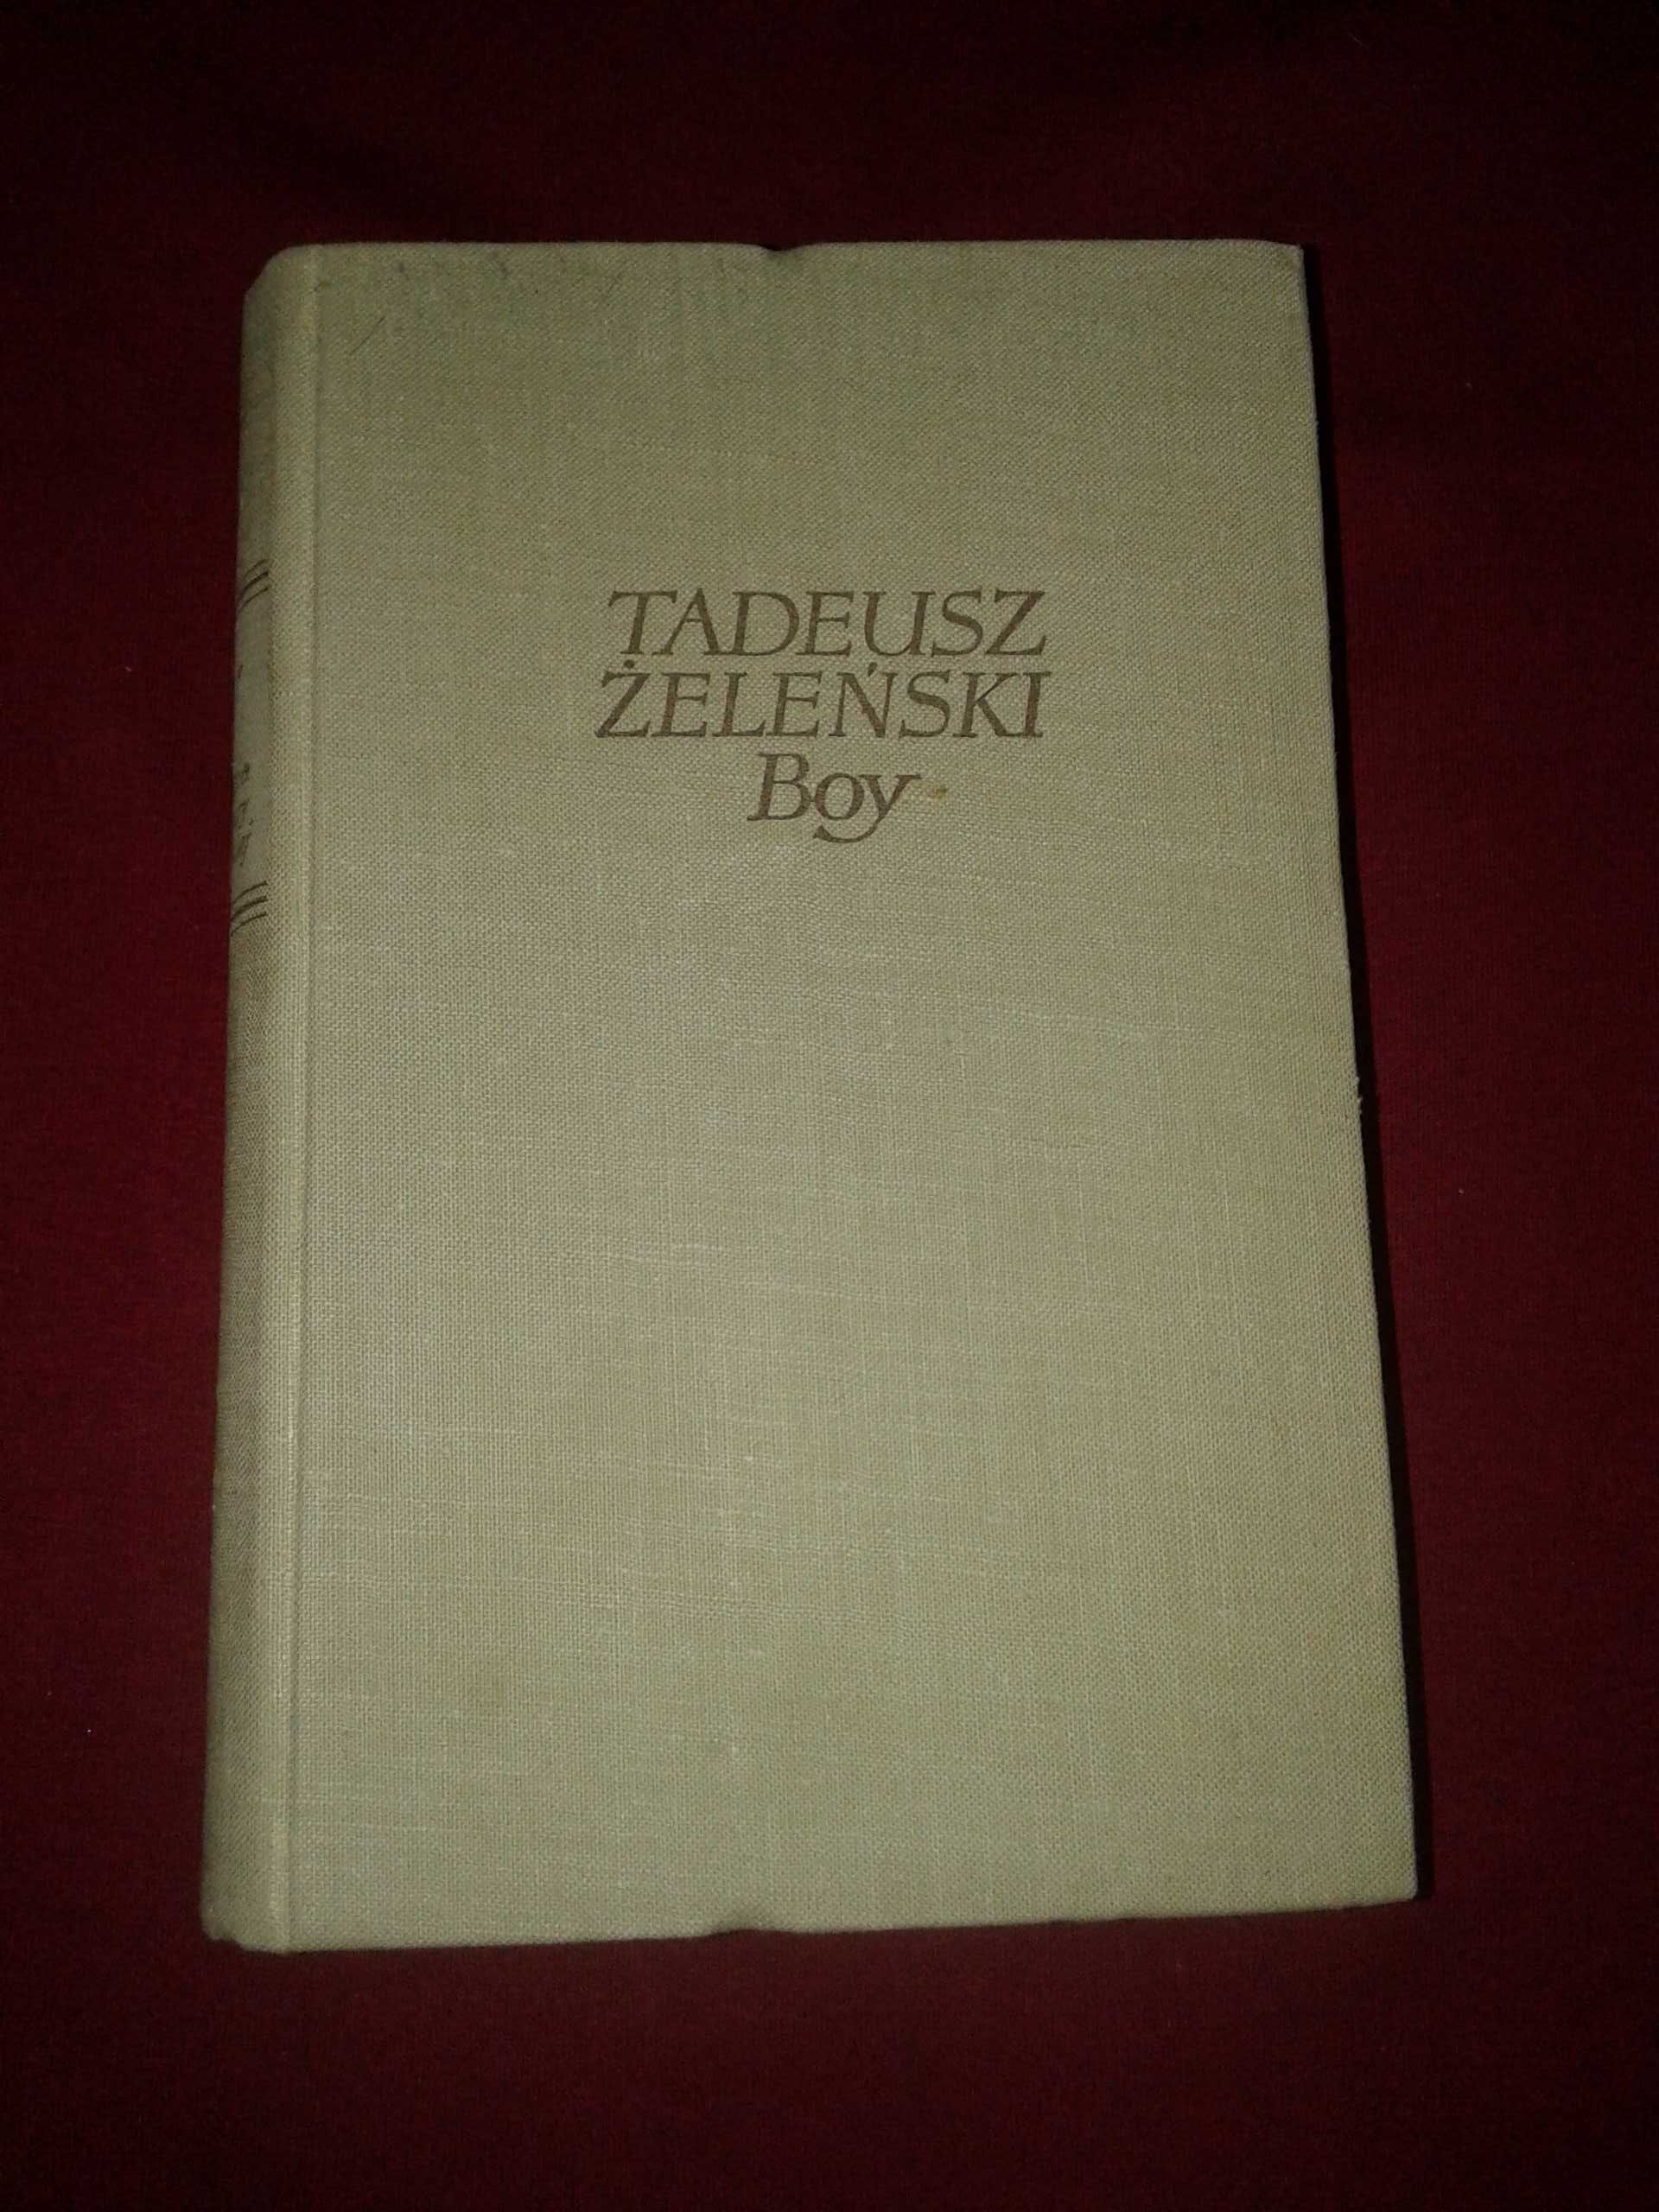 Tadeusz Żeleński Boy Antologia literatury francuskiej